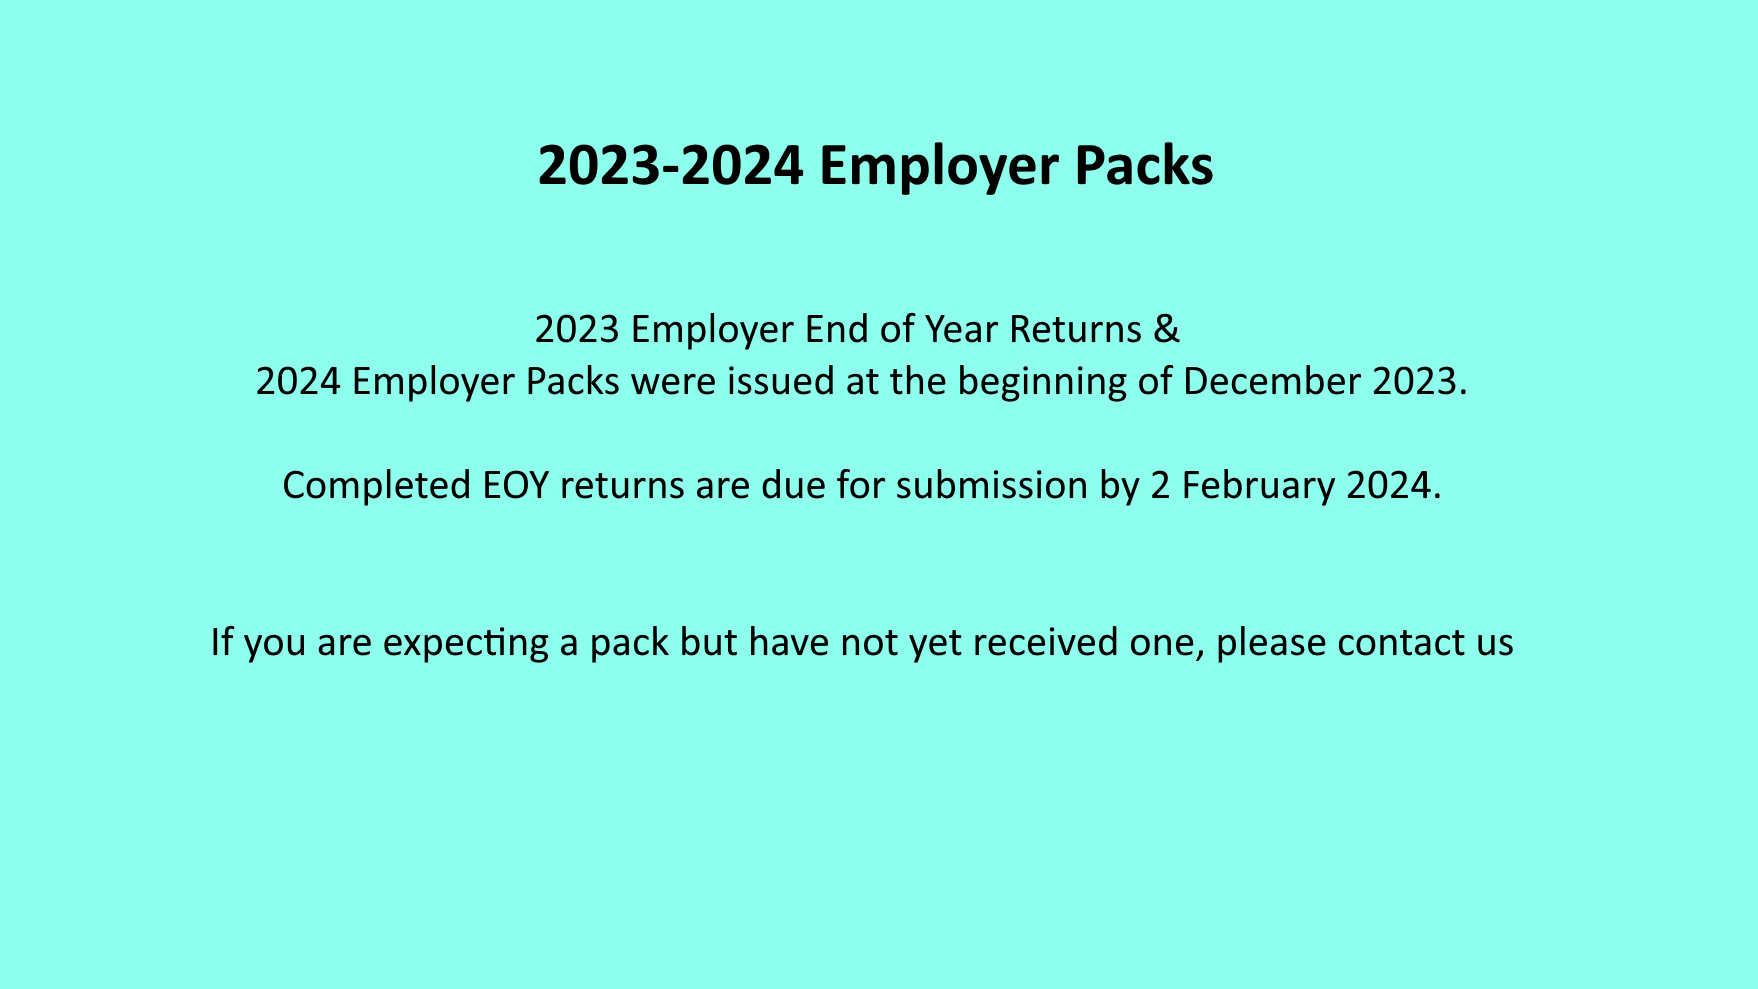 Employer packs